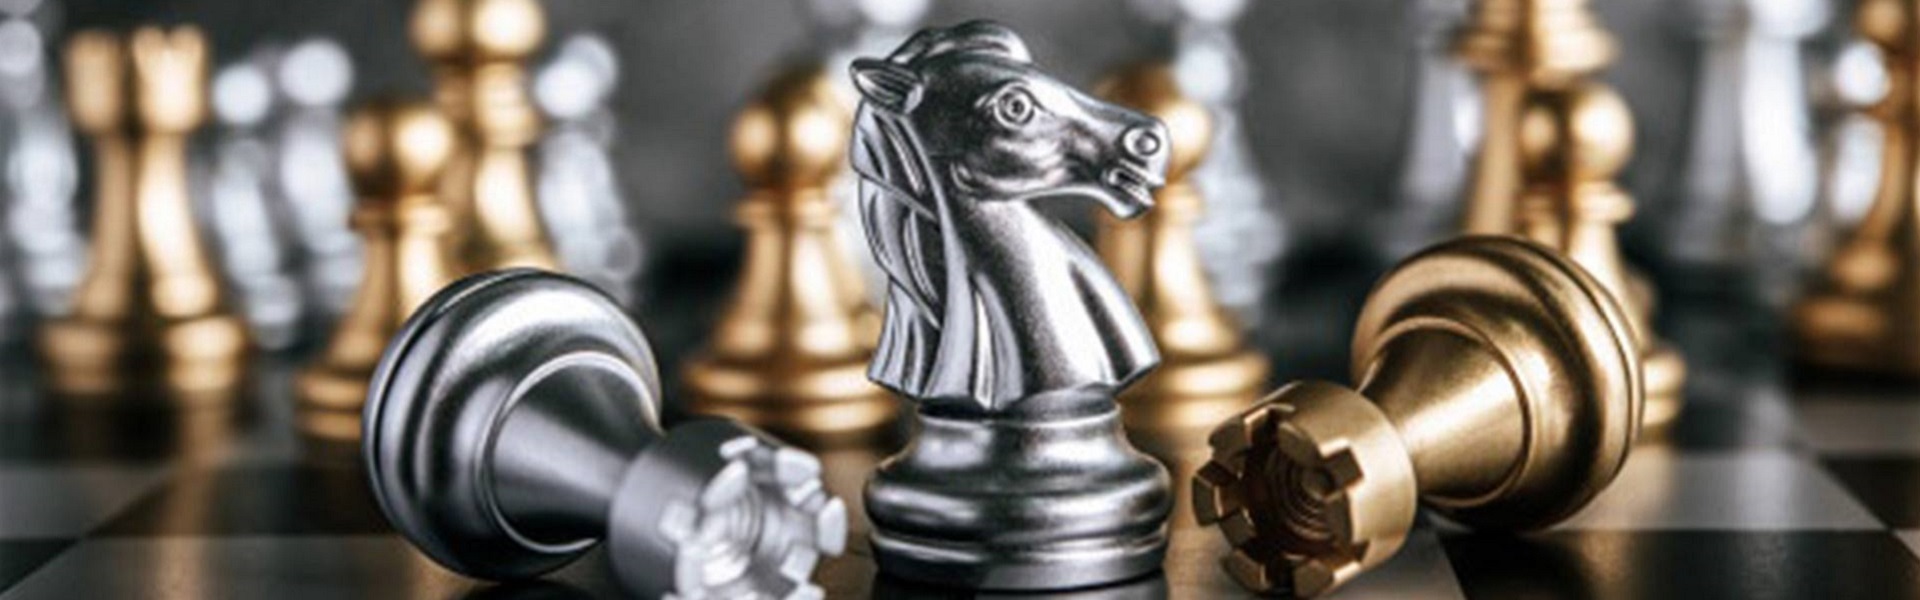 Car Rental Riyadh |  Chess lessons Dubai & New York